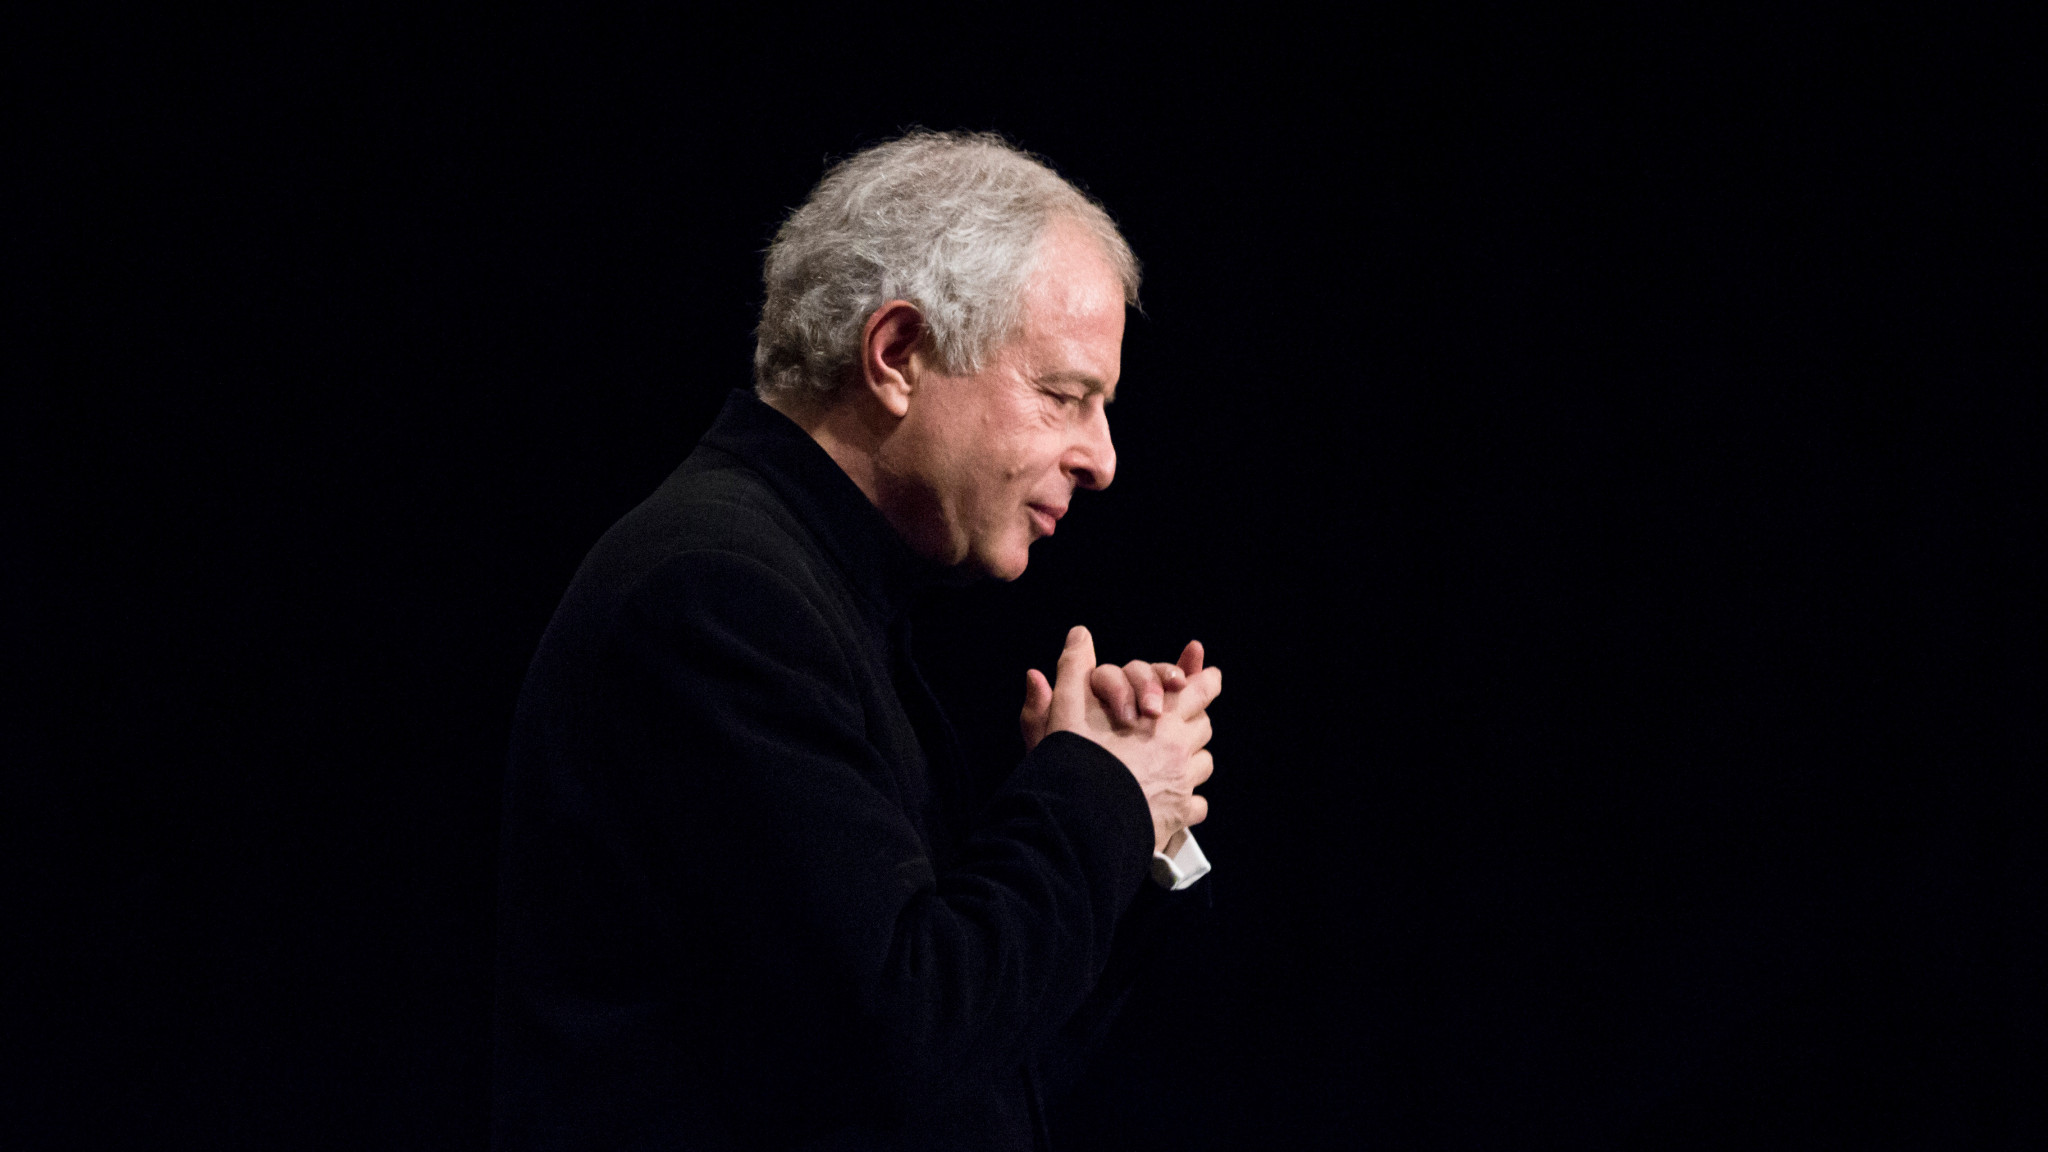 Sir András Schiff taucht Brahms' Klavierkonzerte in neues Licht